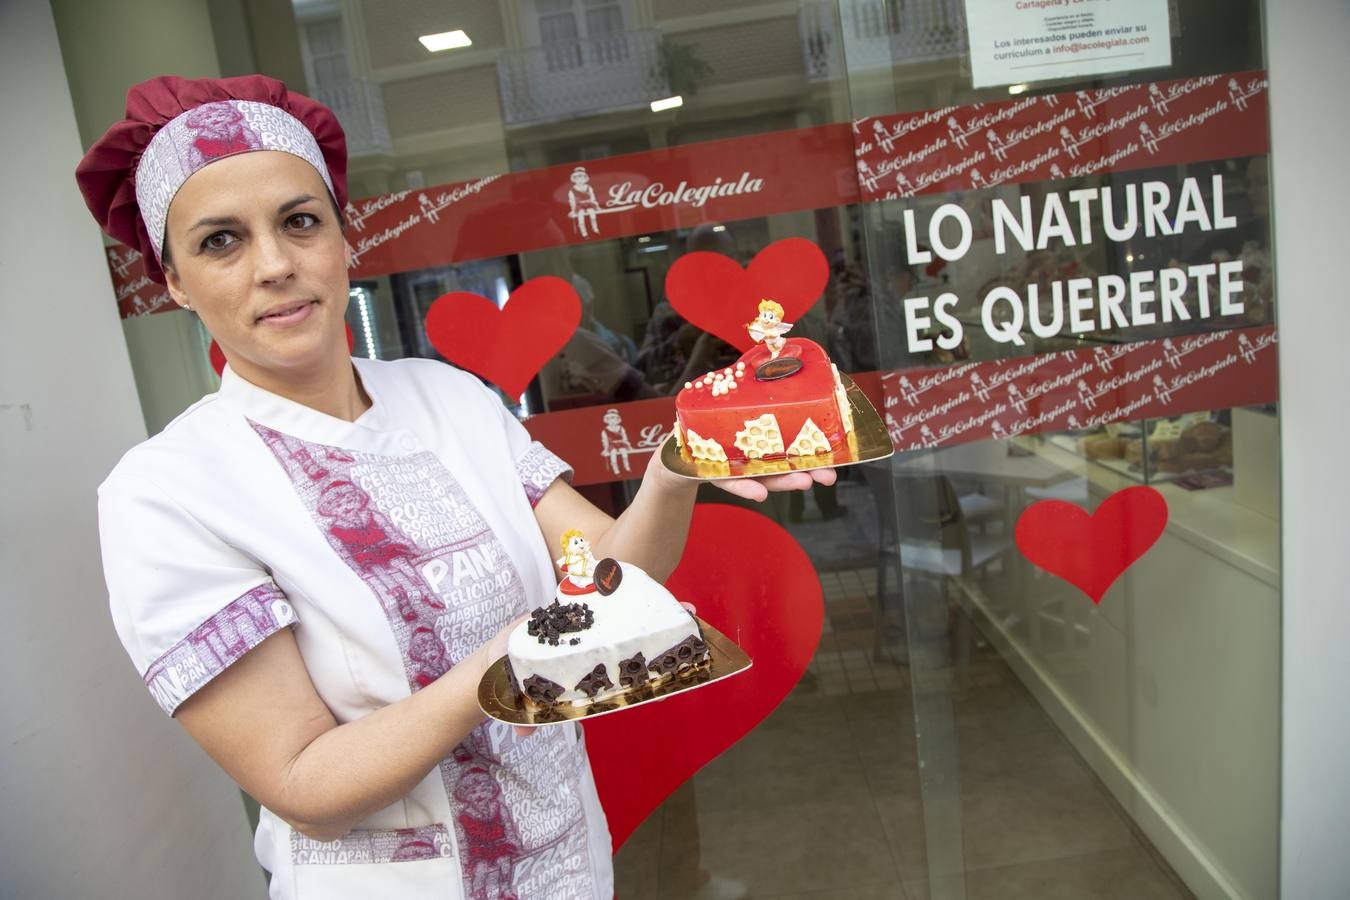 Tiendas, pastelerías y restaurantes ofrecen promociones especiales y su imagen más romántica hasta el domingo